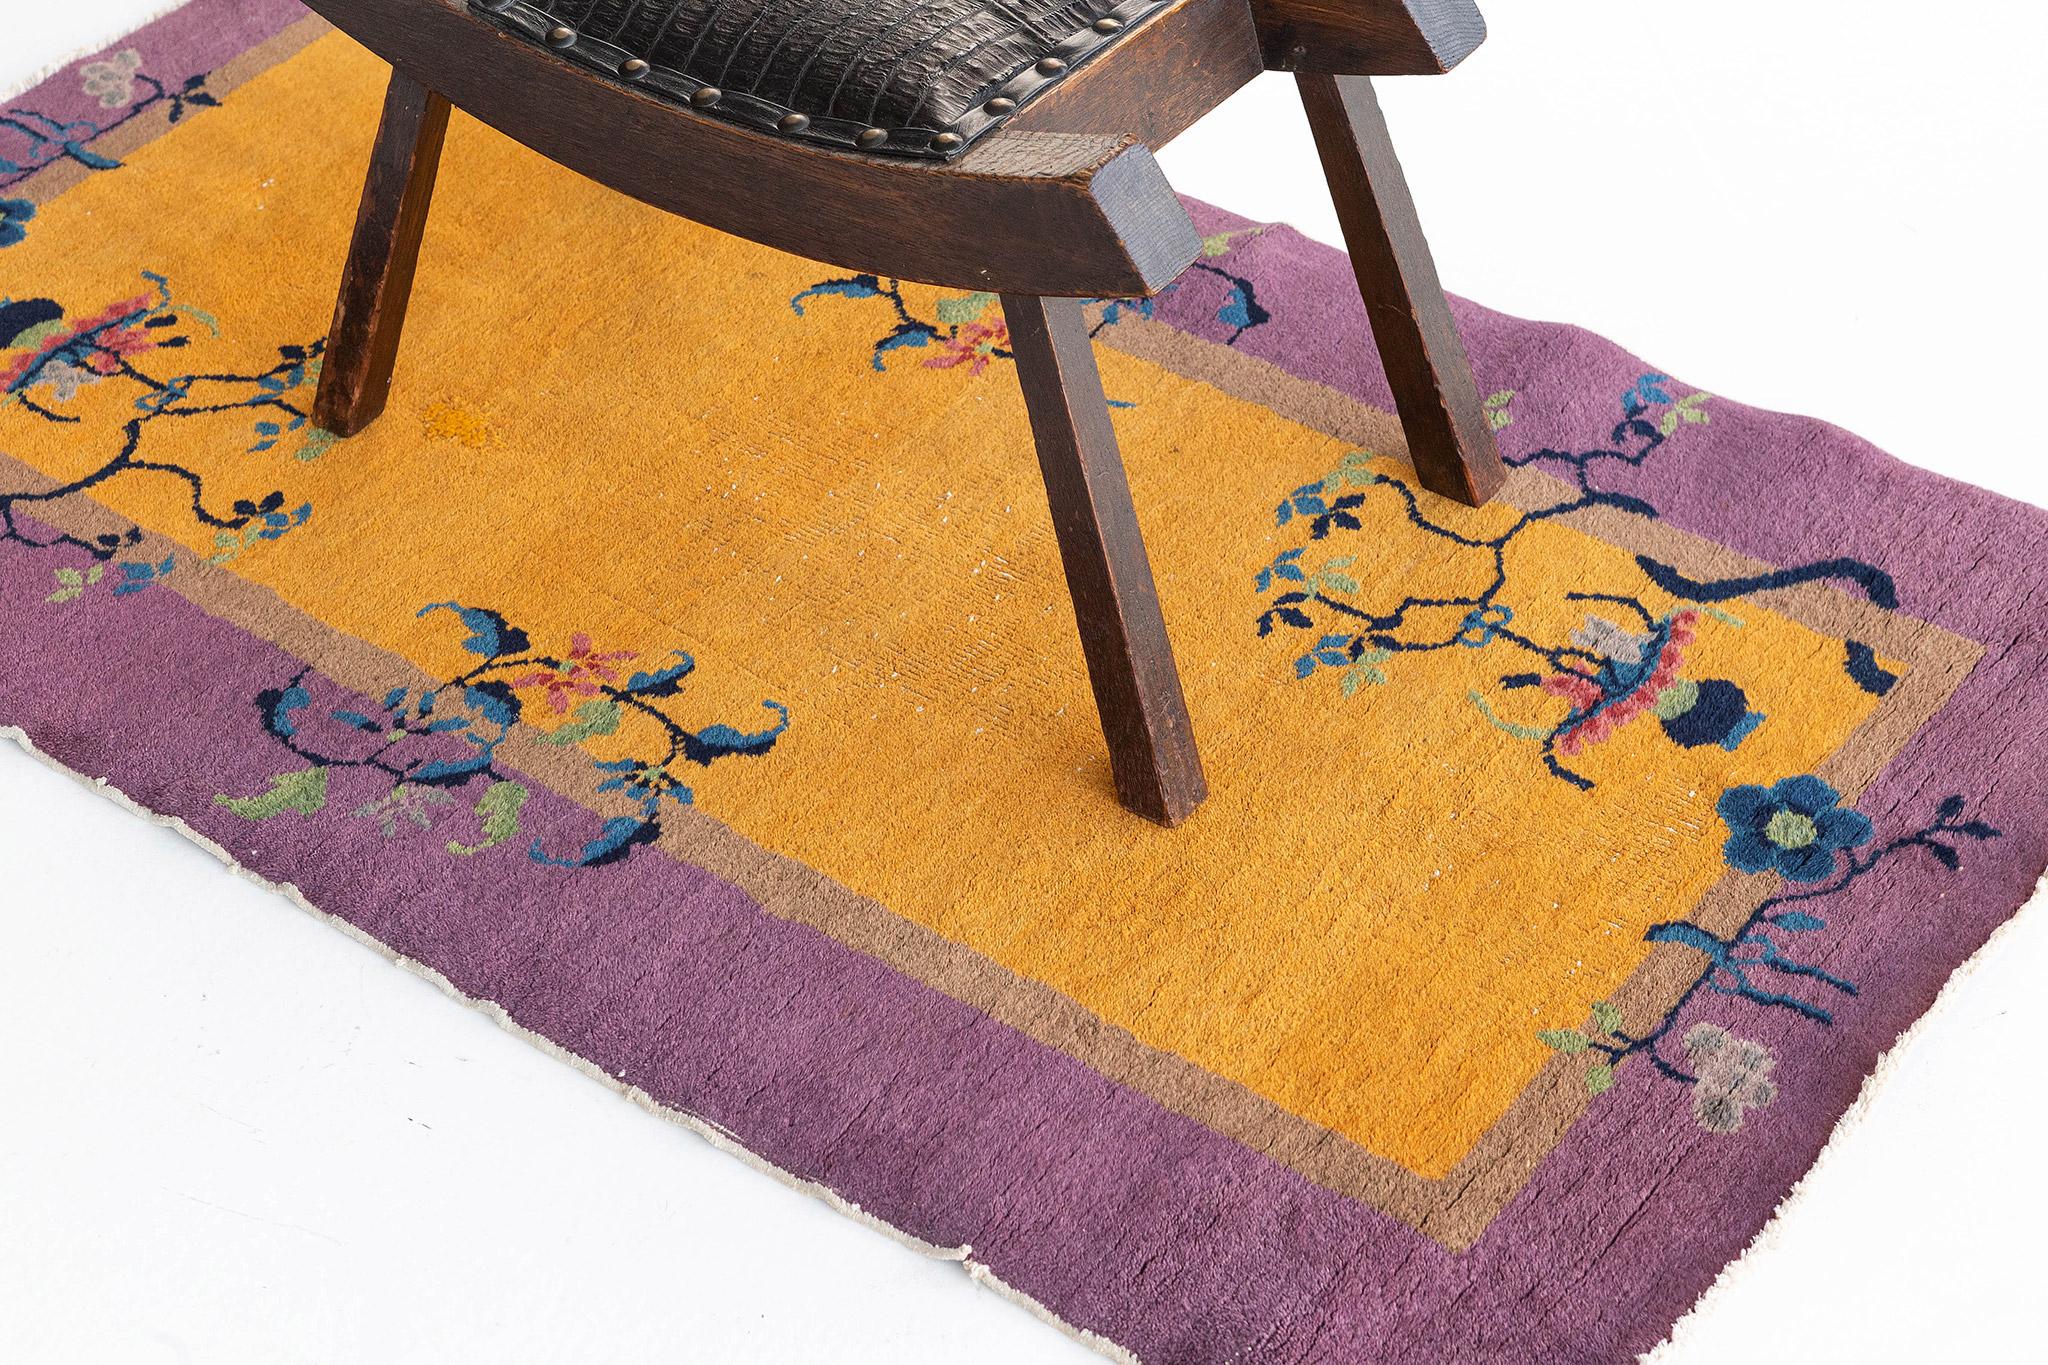 Nichol est un tapis chinois vintage art déco qui laissera des impressions durables et rehaussera n'importe quel espace design. Le champ jaune safran et les bordures violettes, associés aux vignes florales traditionnelles, créent une élégance